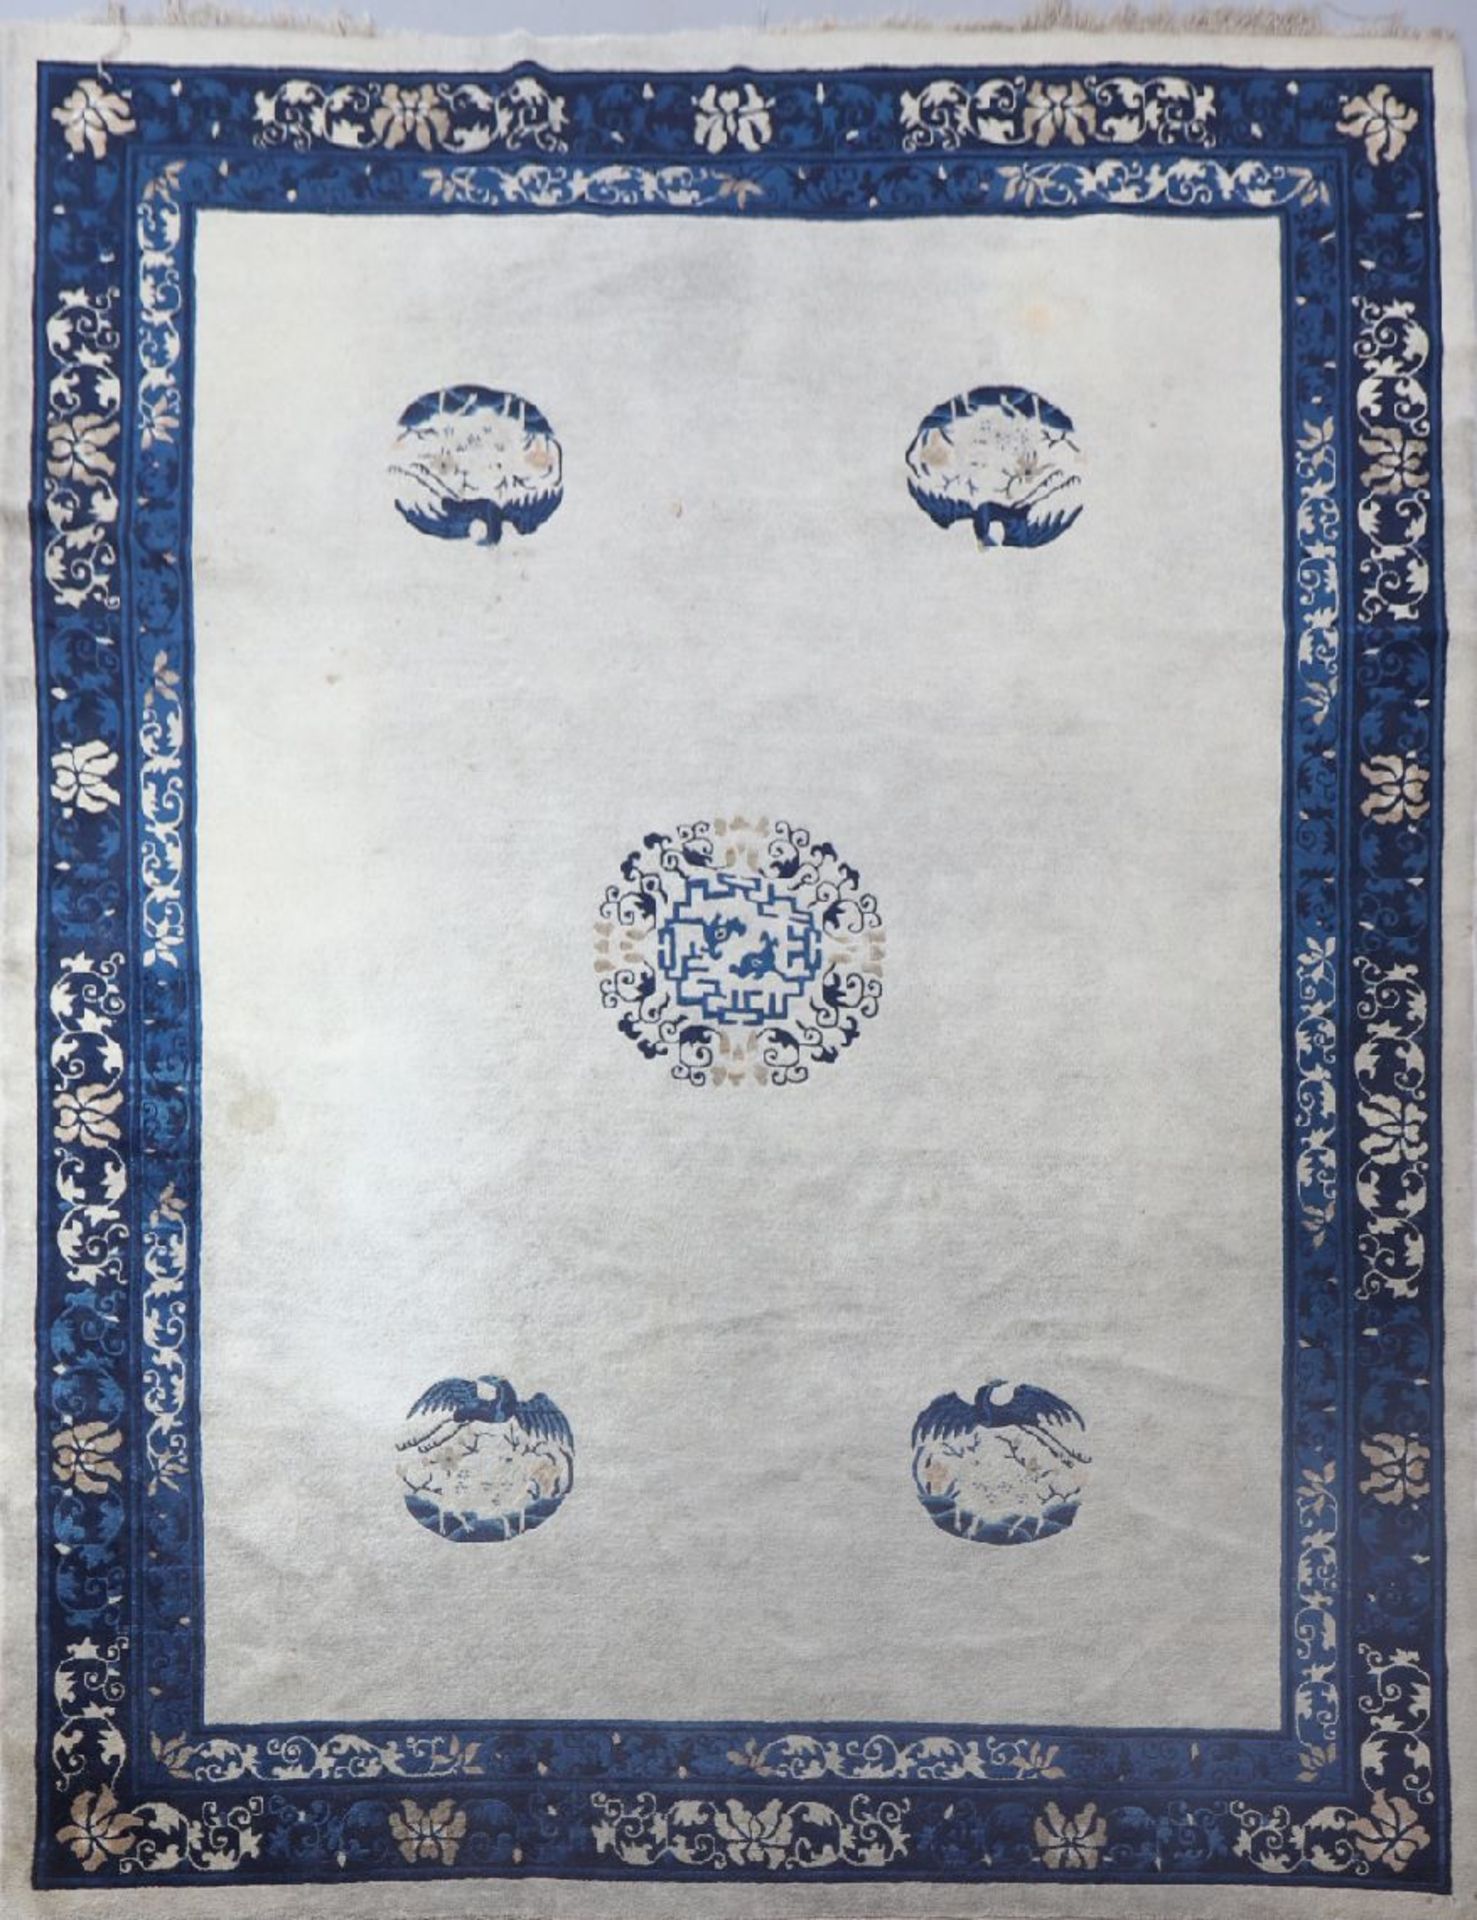 Chinesischer TeppichPeking, um 1900, hellgrundig, blaue Borte mit Floralornament, 360x275cm, leichte